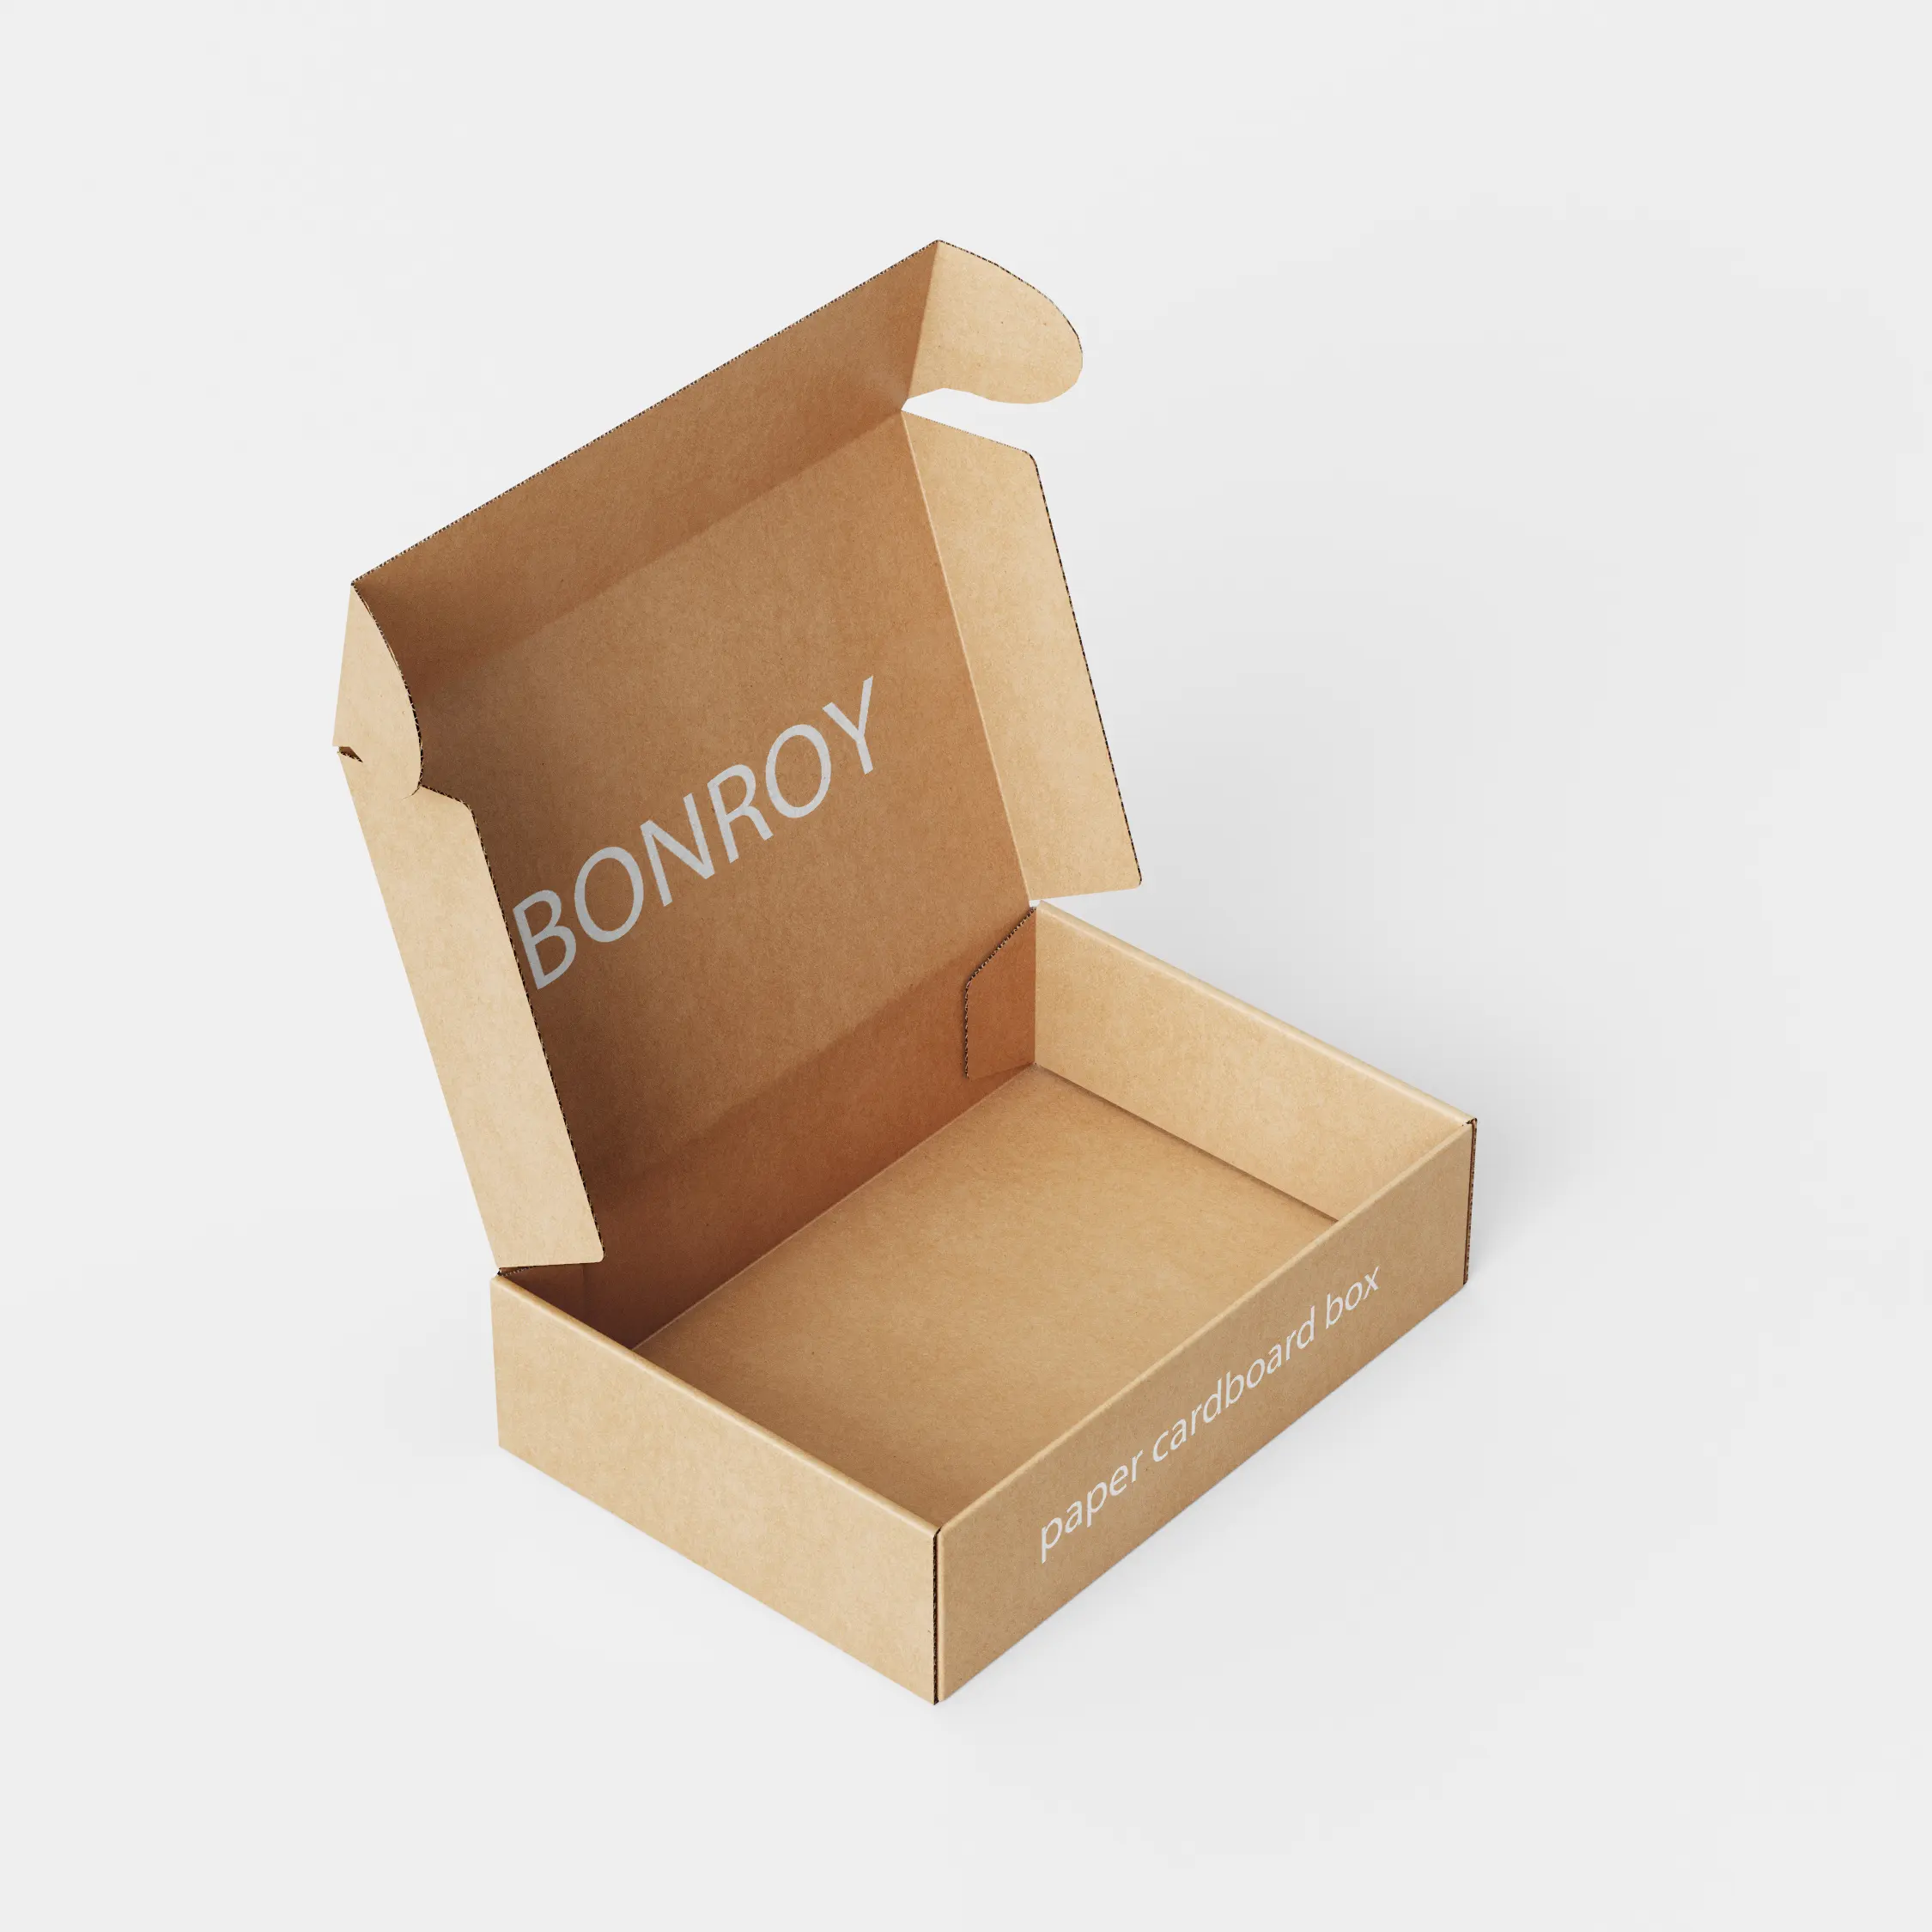 BONROY Kartons, Box von karton oder papier, boxen, lagerung behälter und verpackungen container aus papier oder cardbooard